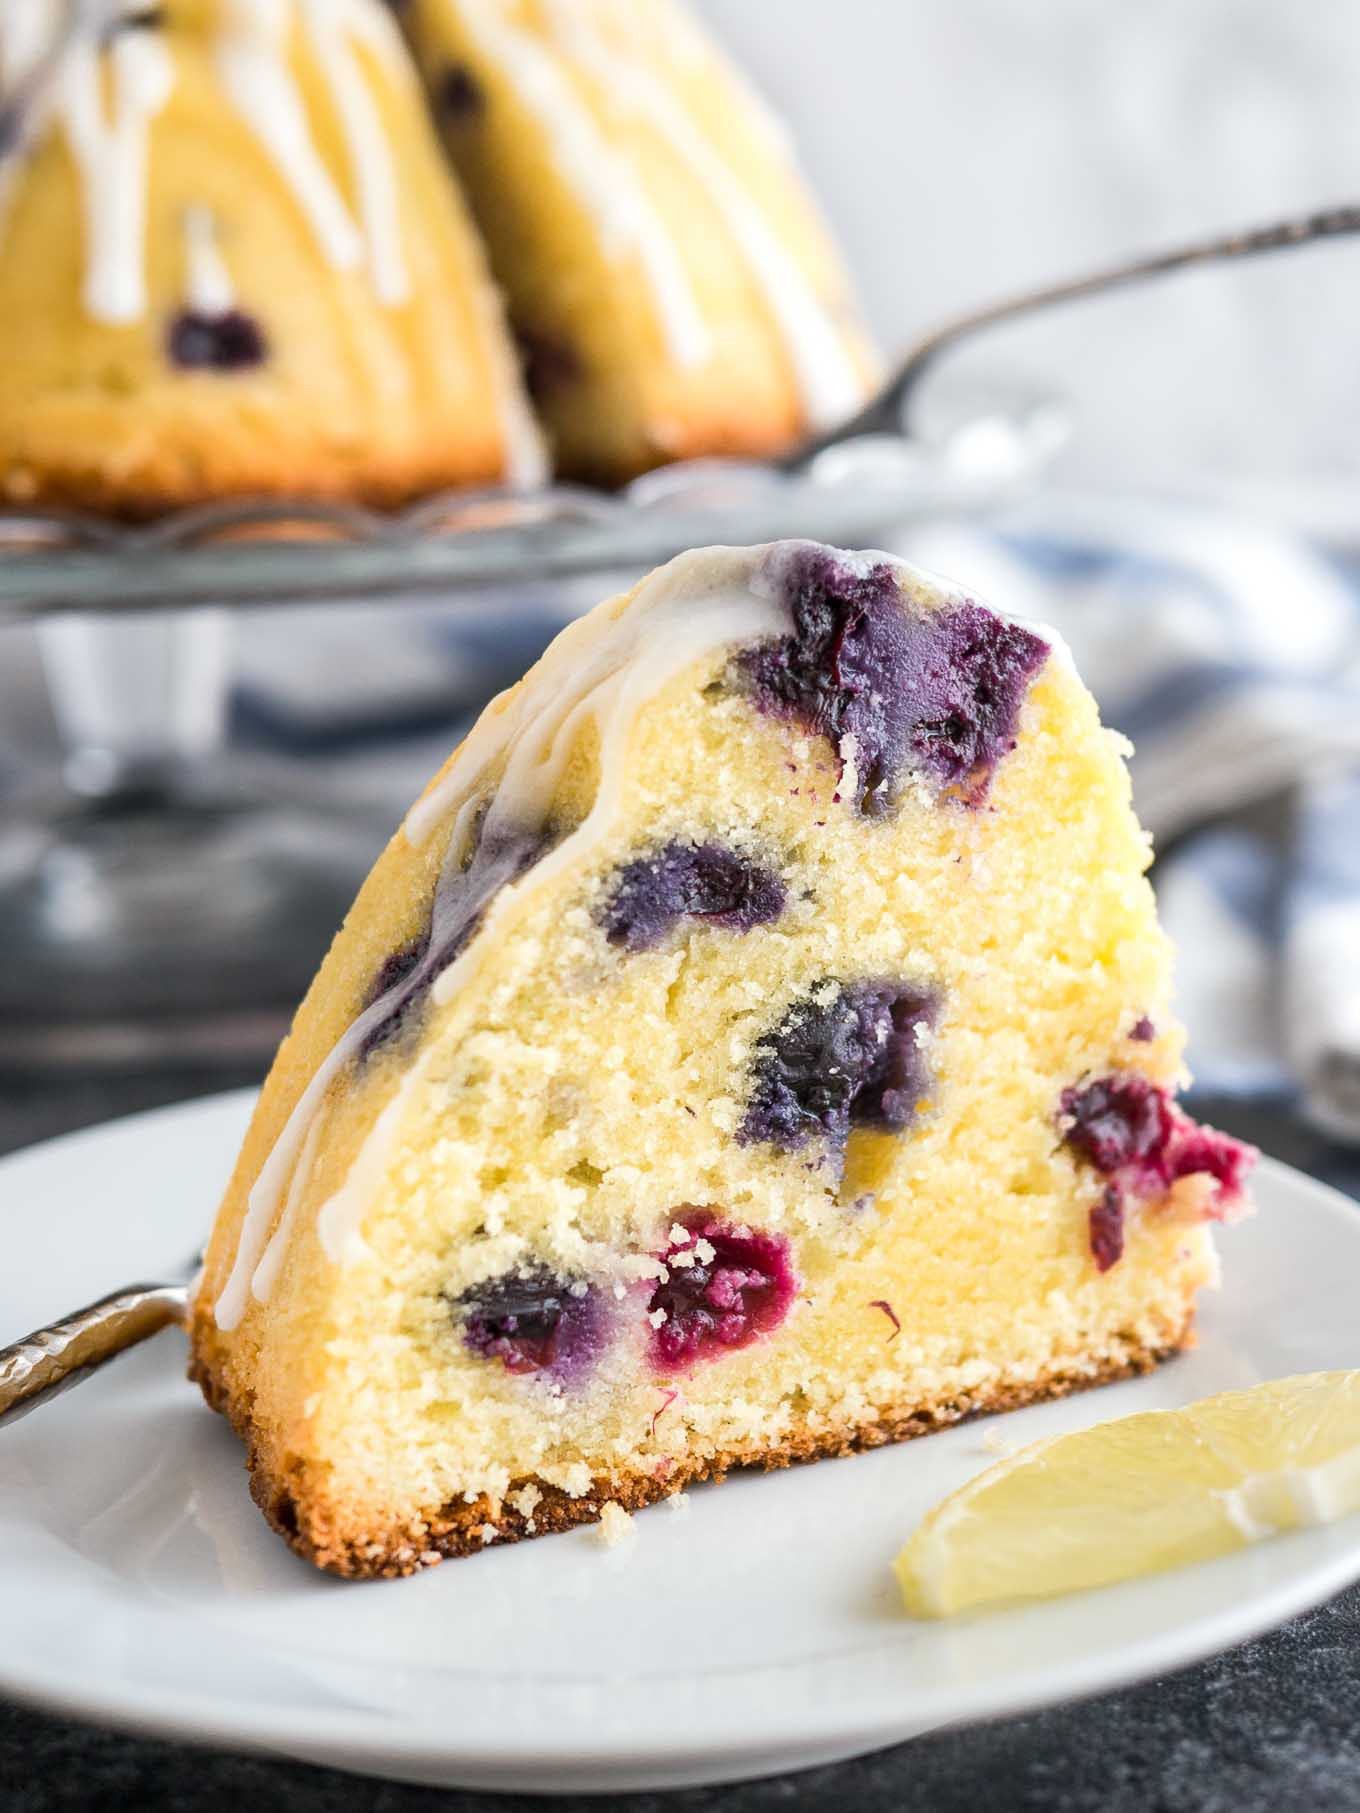 Lemon Bundt Cake From Cake Mix
 lemon blueberry bundt cake using cake mix